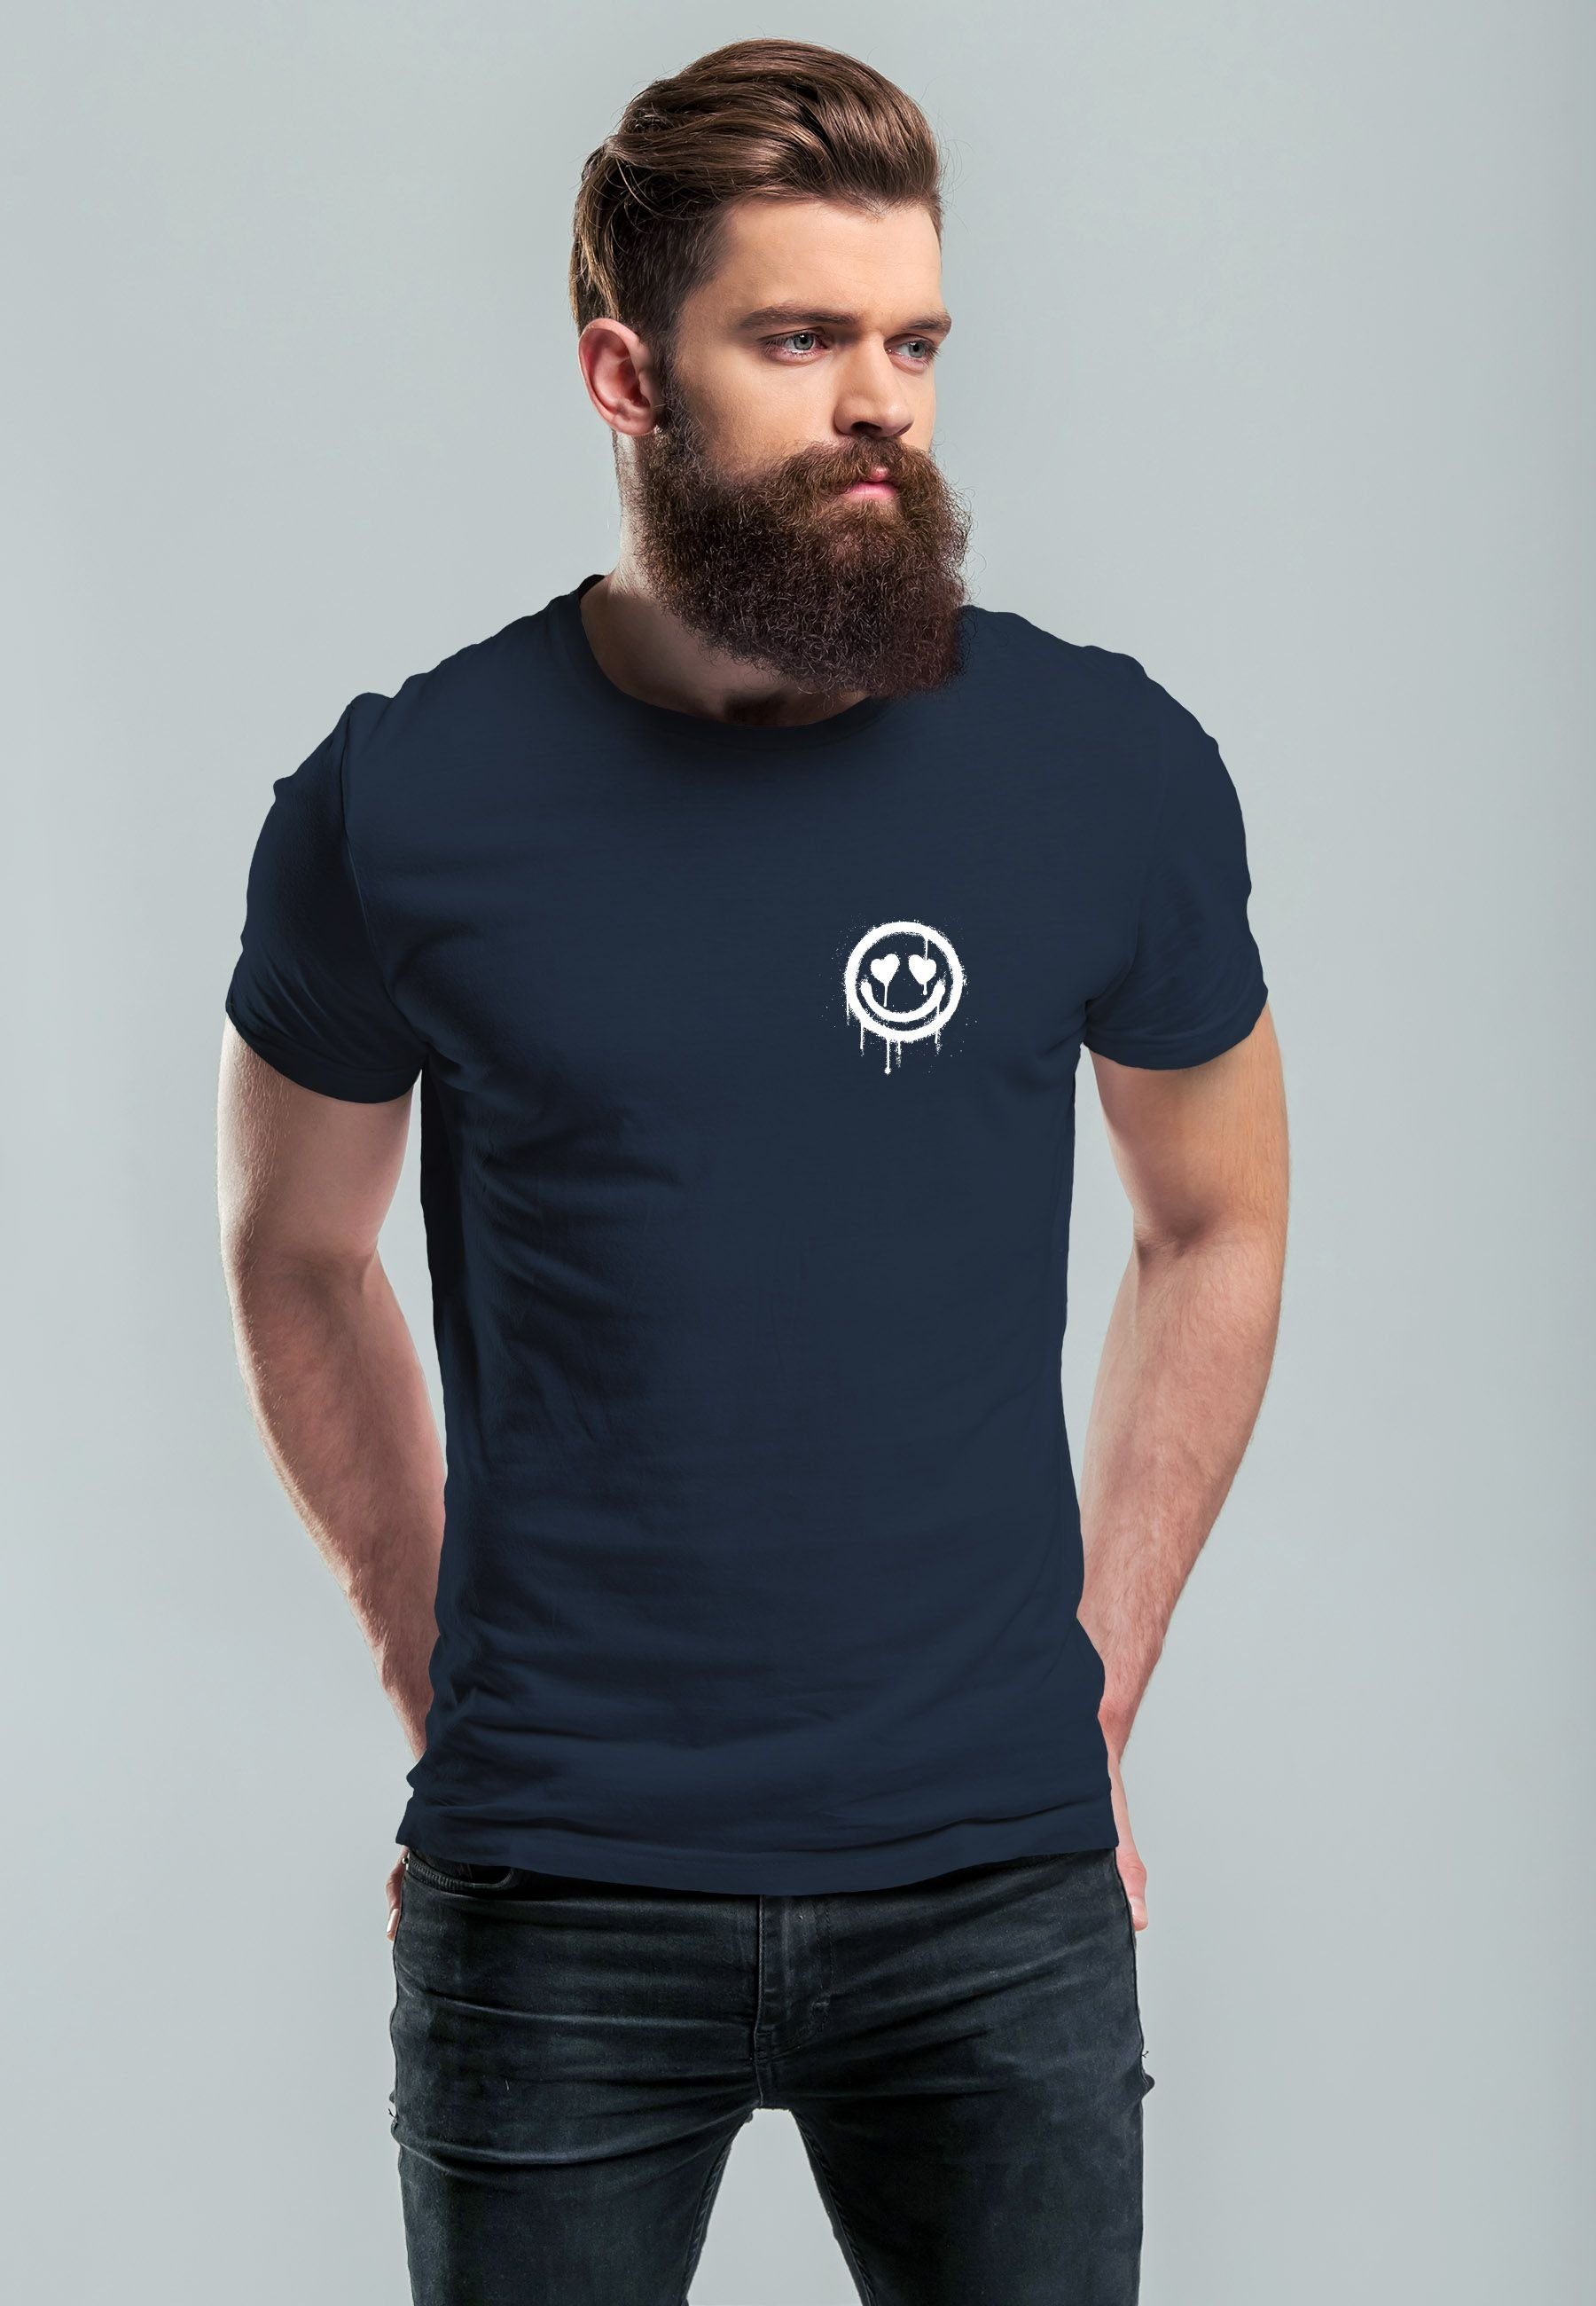 Neverless Print-Shirt T-Shirt mit Herren Herz-Augen Motiv Drip Print Face Drippy navy Aufdruck Print Smile